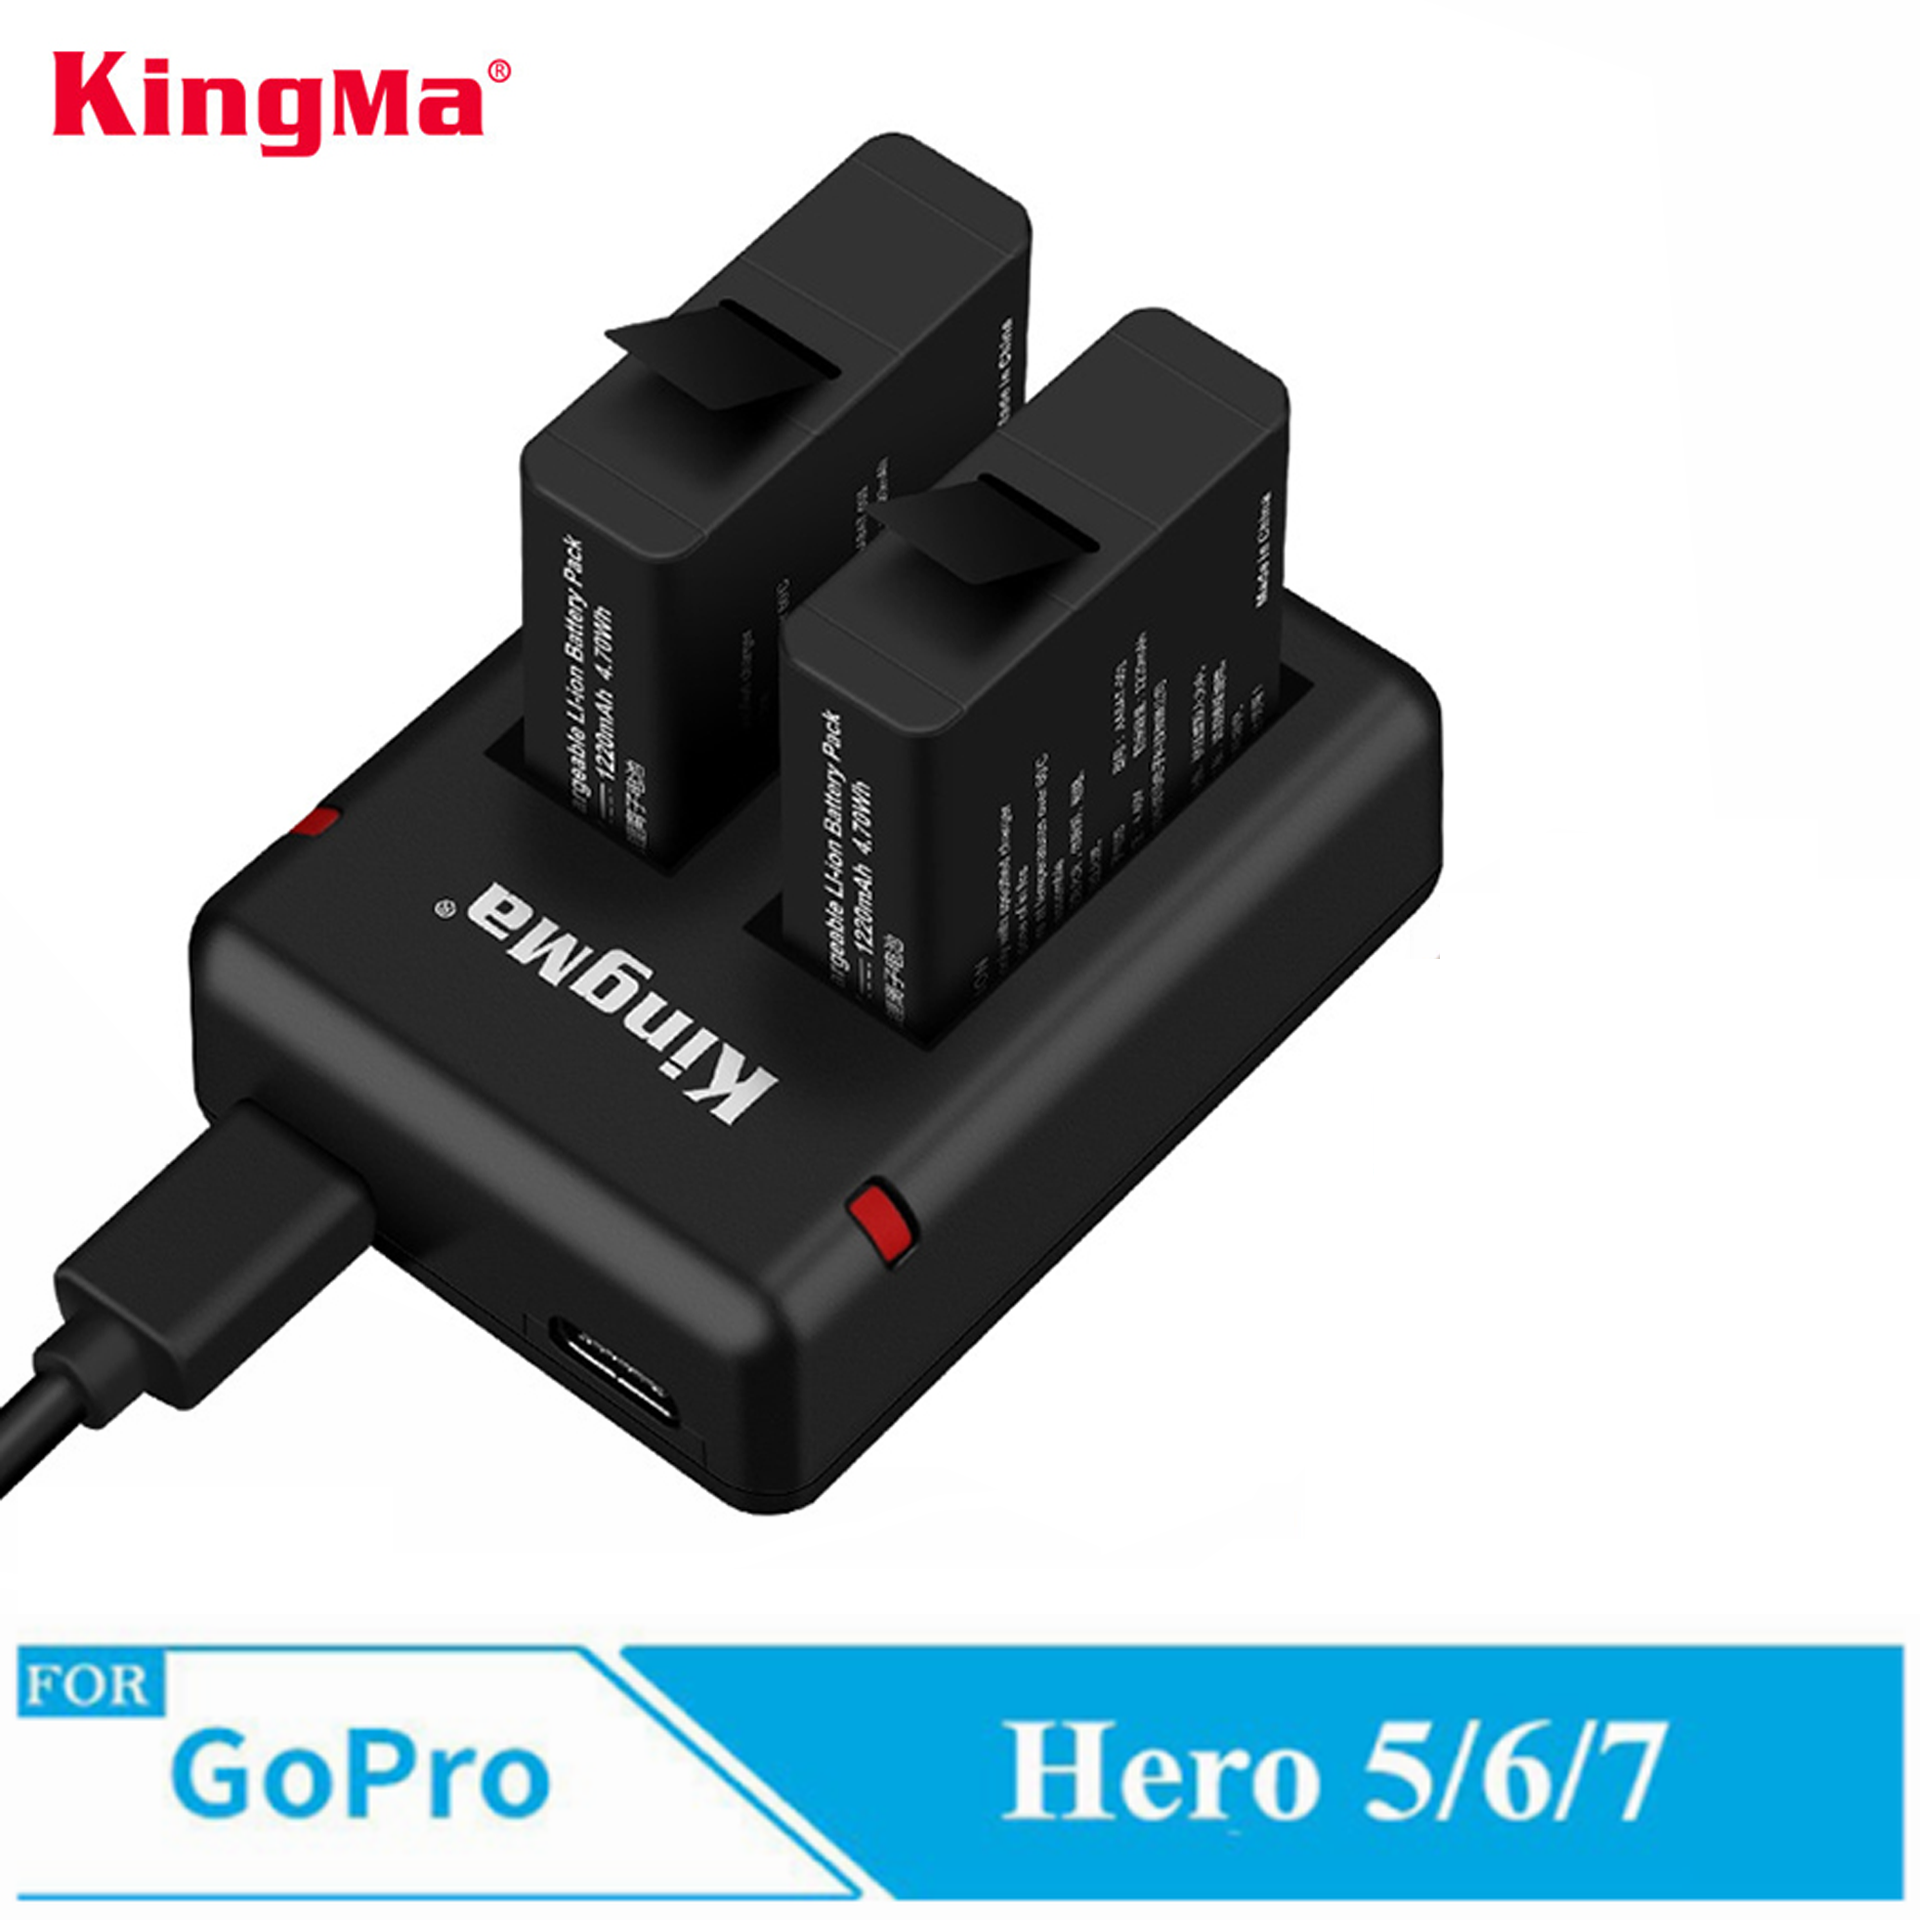 Combo sạc đôi + 2 pin Kingma cho GoPro Hero 5, GoPro Hero 6, GoPro Hero 7, GoPro Hero 8, GoPro new hero 2018